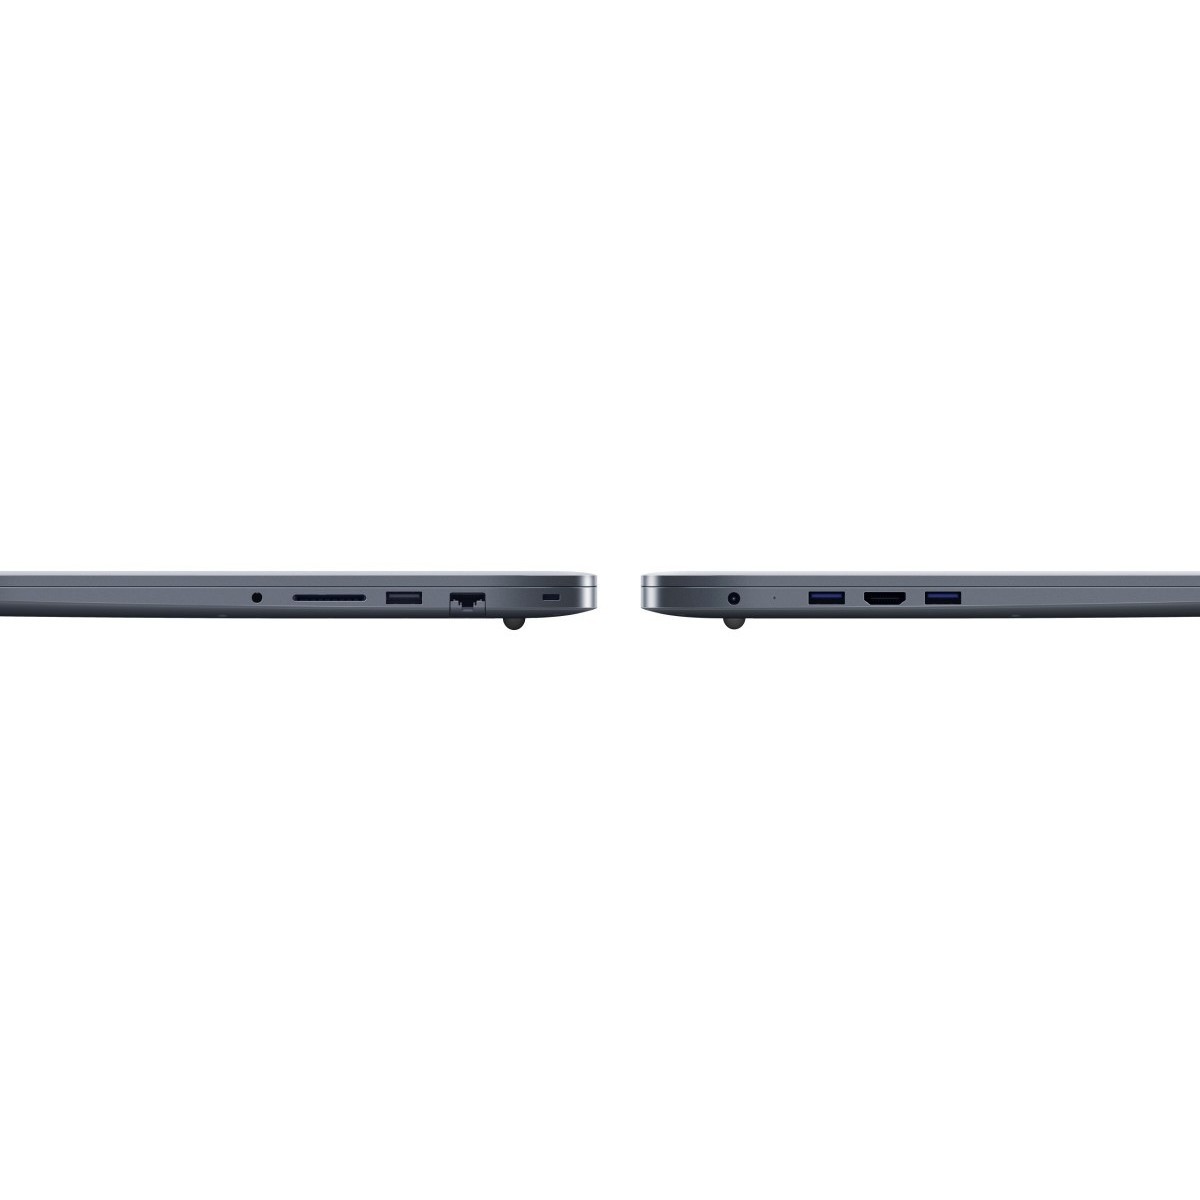 Ноутбук MSI Stealth 15m. Ноутбук MSI Stealth 15m a11sdk. Ноутбук MSI Stealth 15m RTX 2060. Ноутбук игровой MSI Stealth 15m a11sek-212ru.